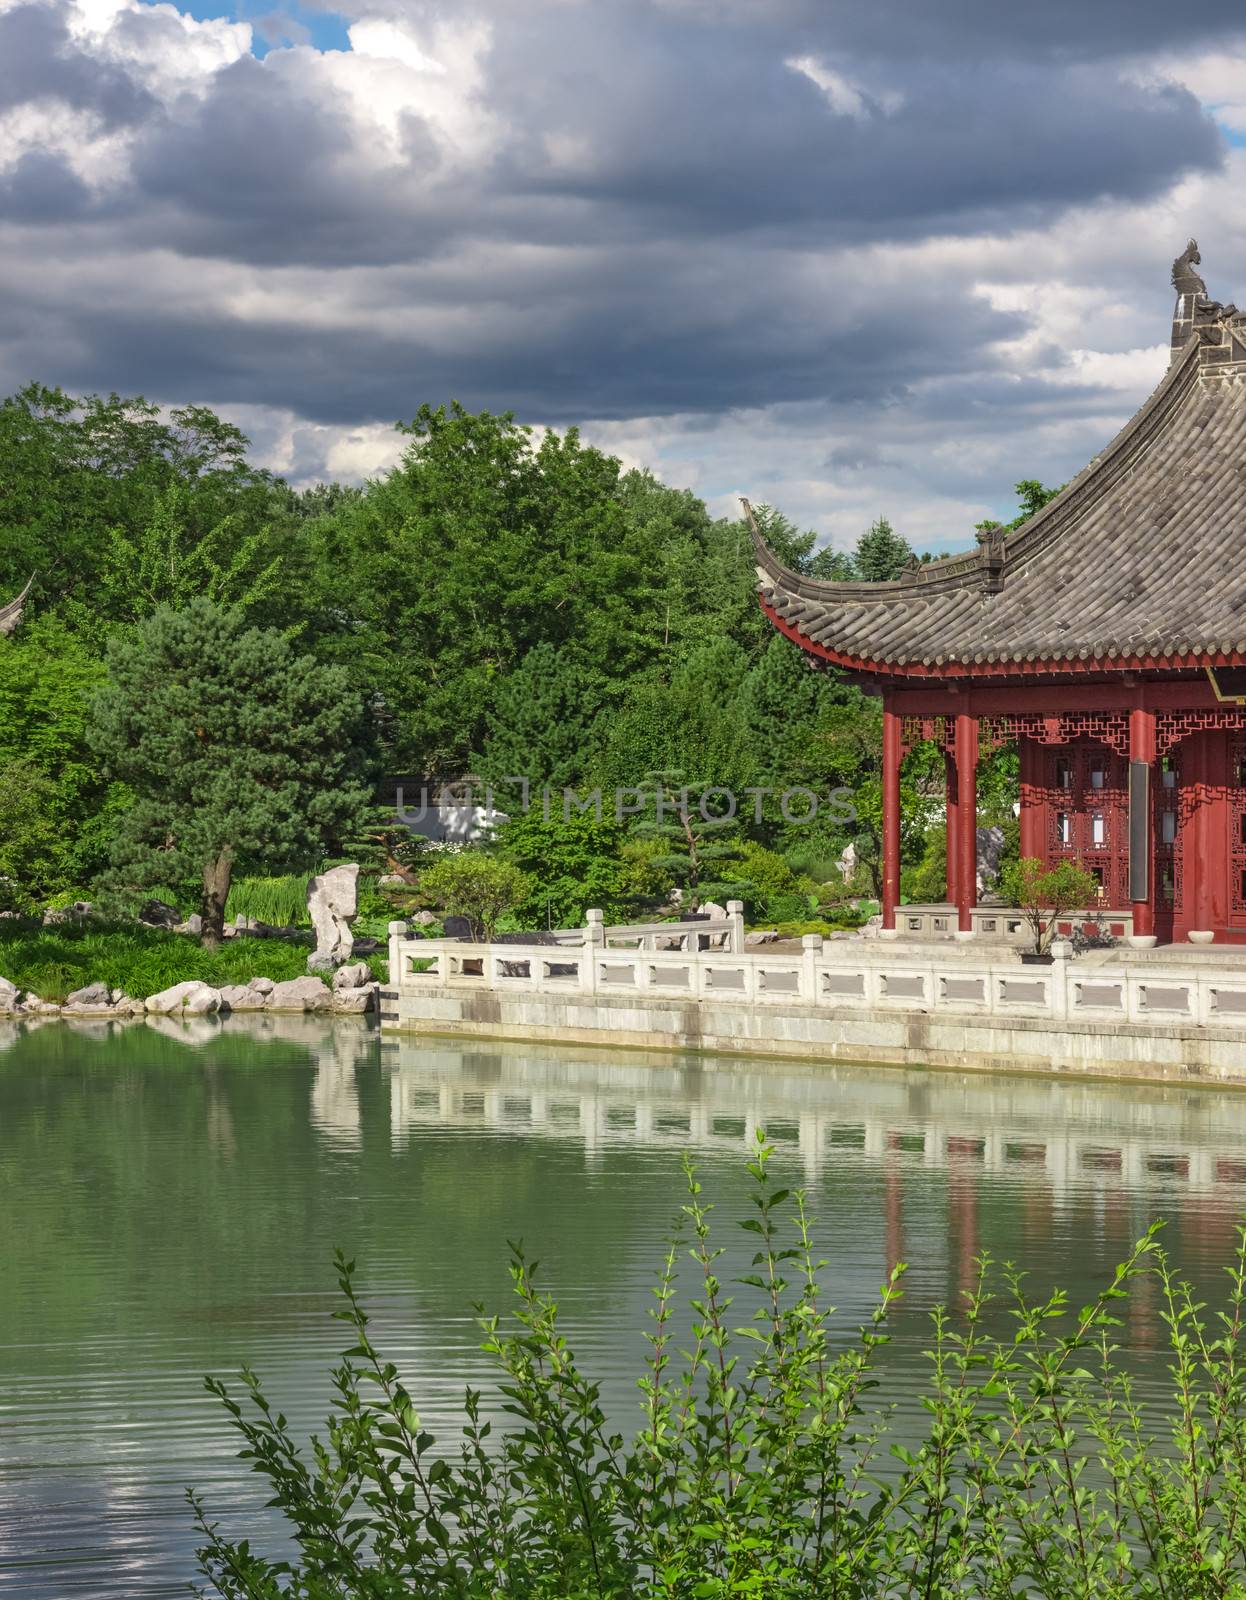 Chinese garden in summer by anikasalsera